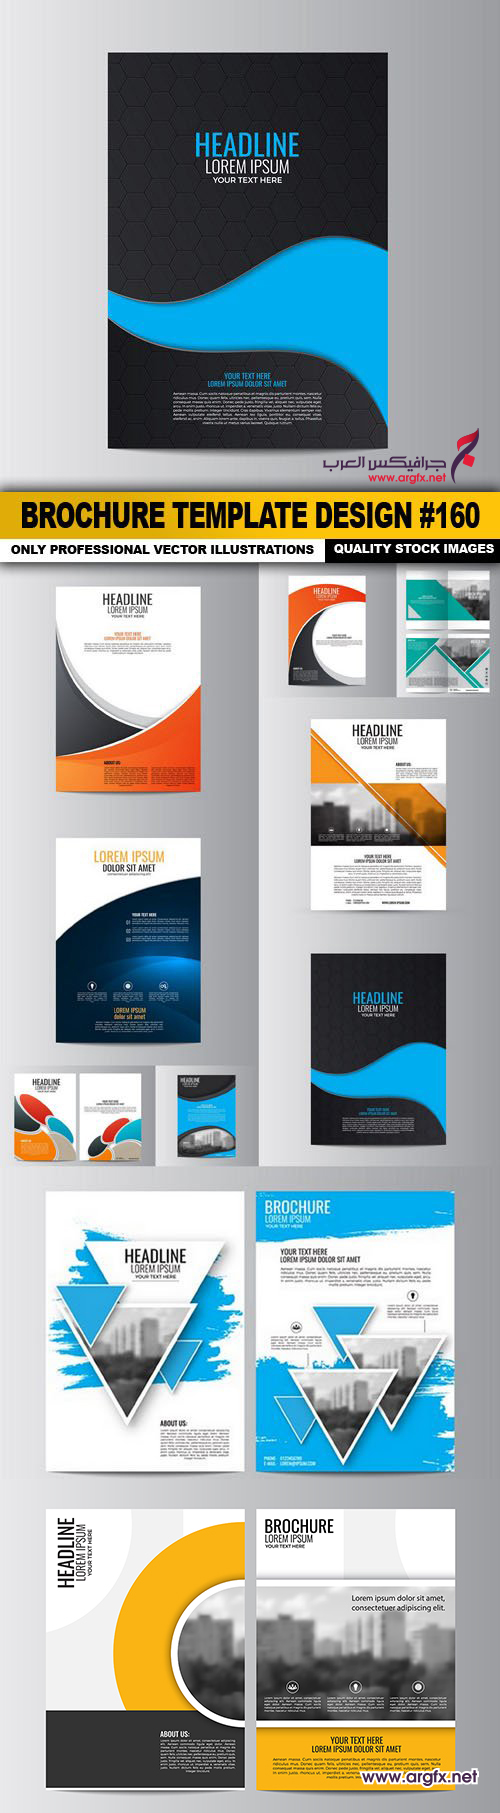  Brochure Template Design #160 - 10 Vector